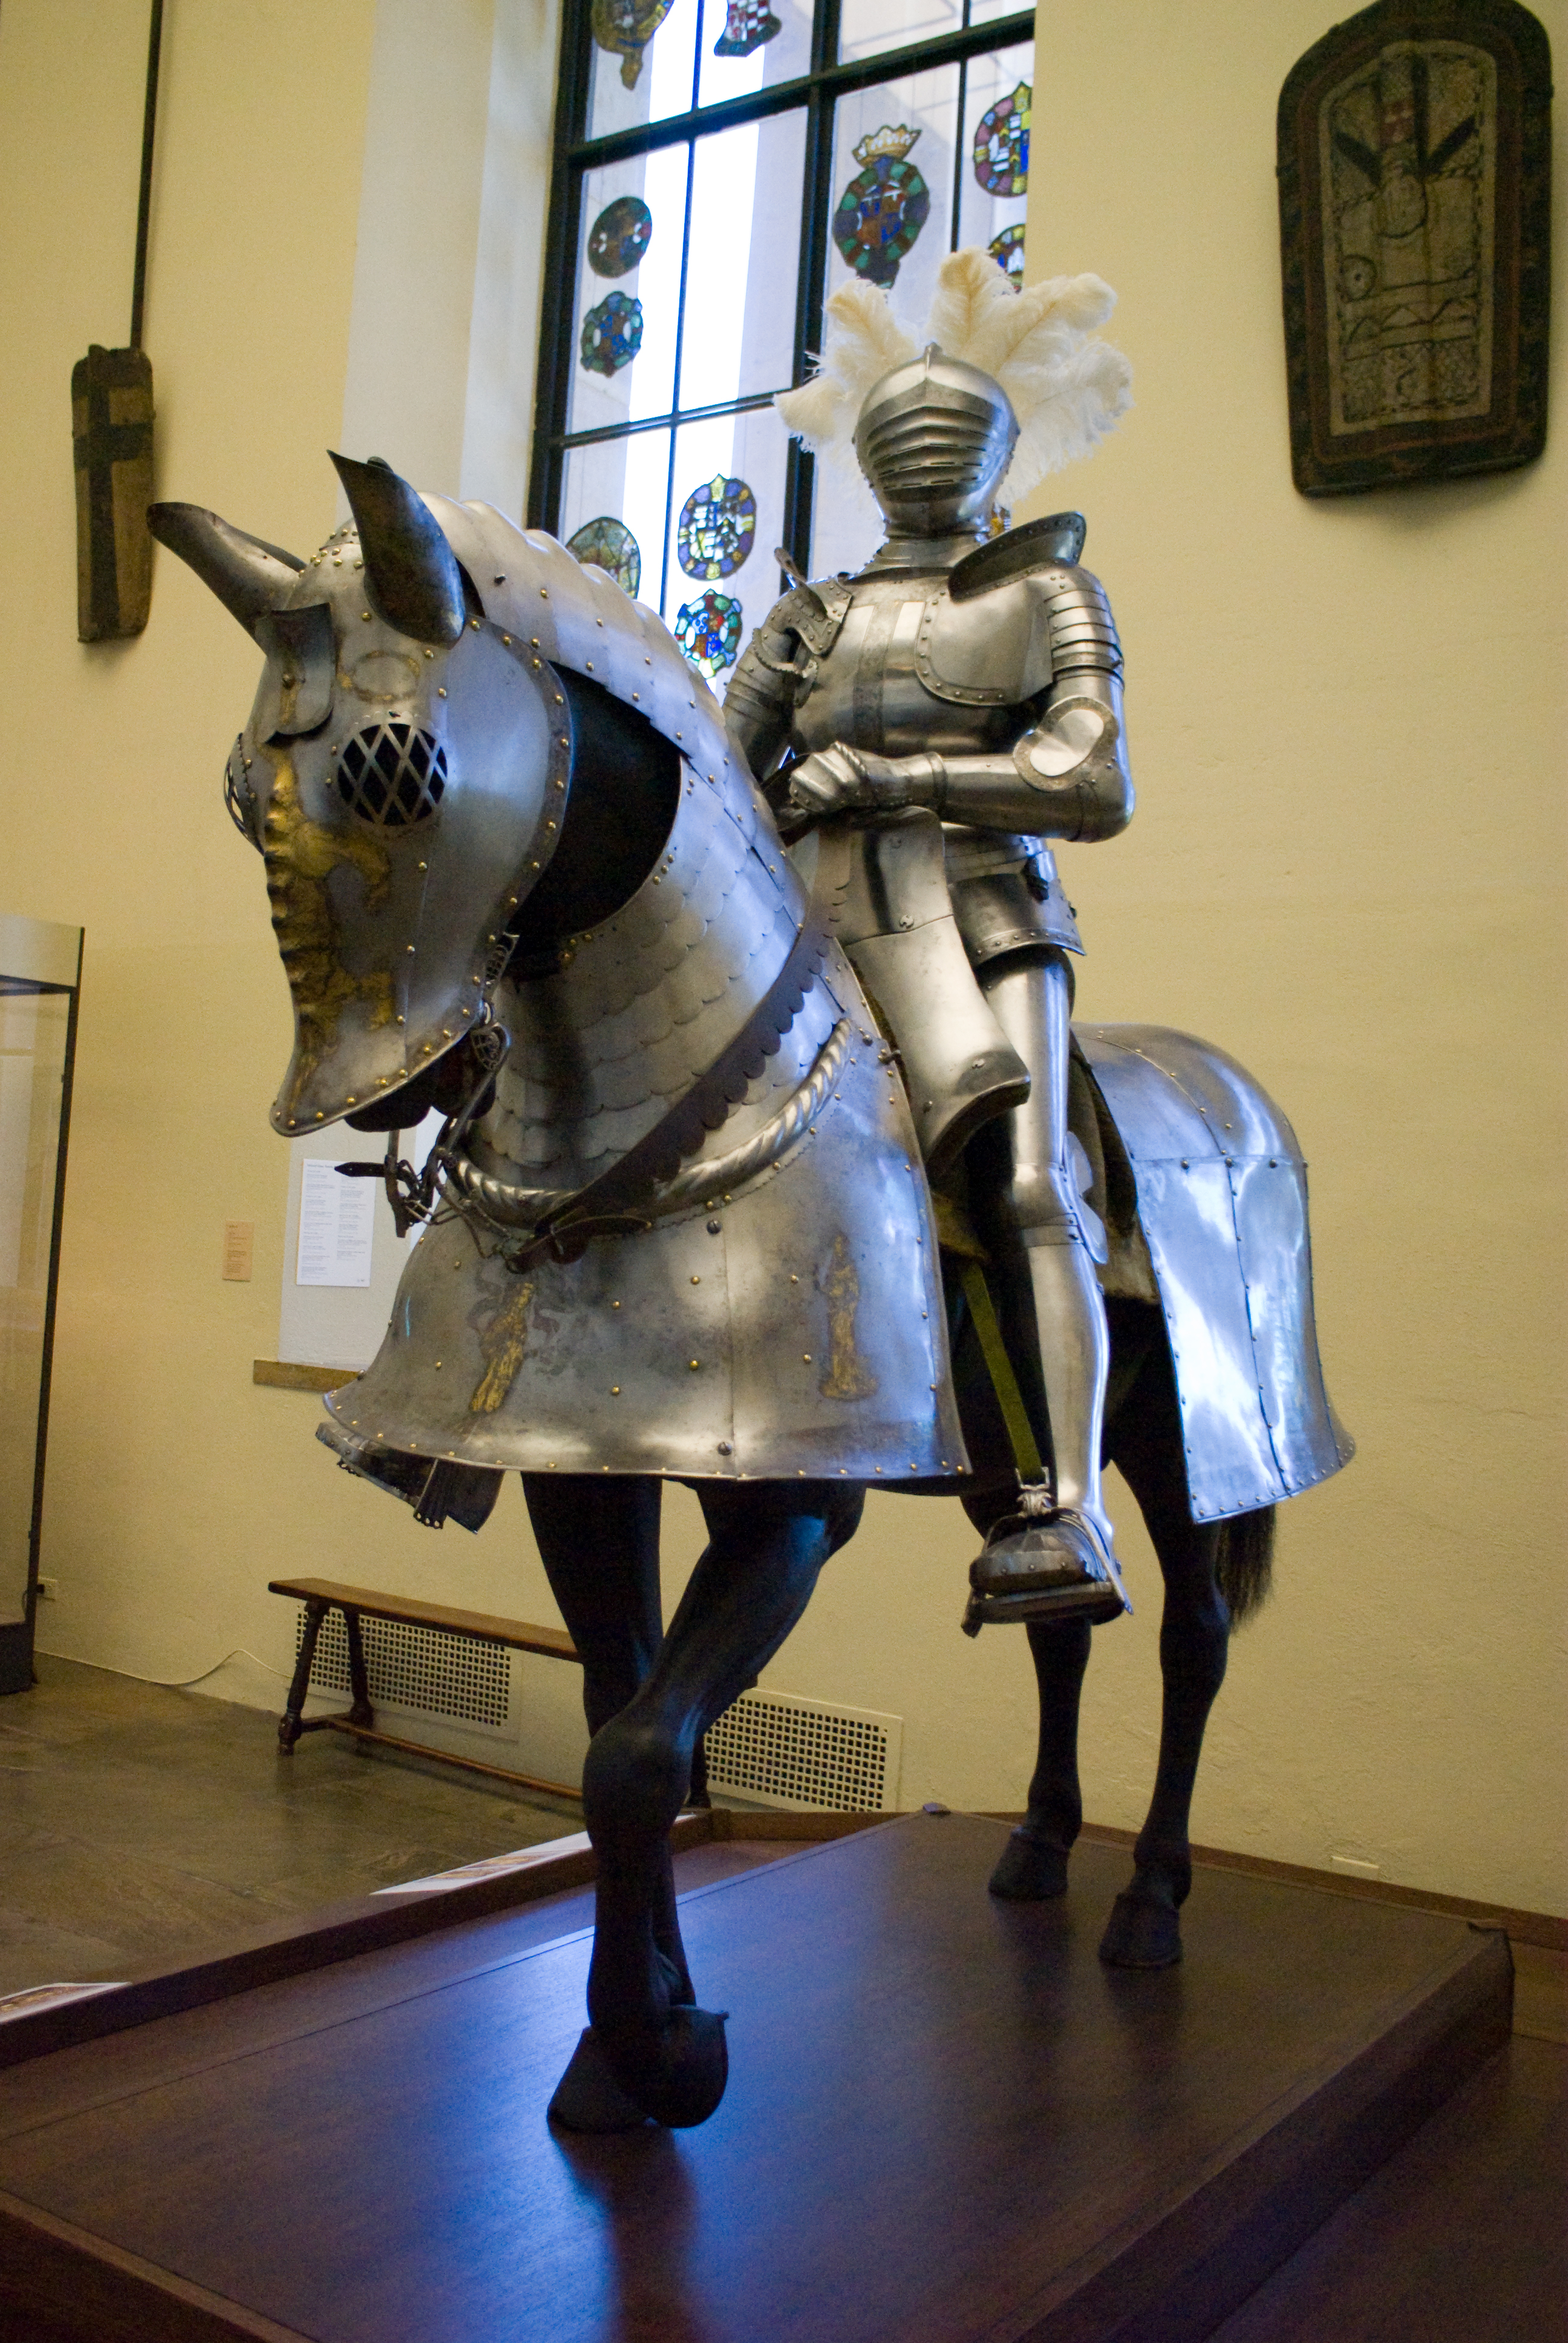 File:Armored Knight on Horseback, Philadelphia Museum of Art.jpg